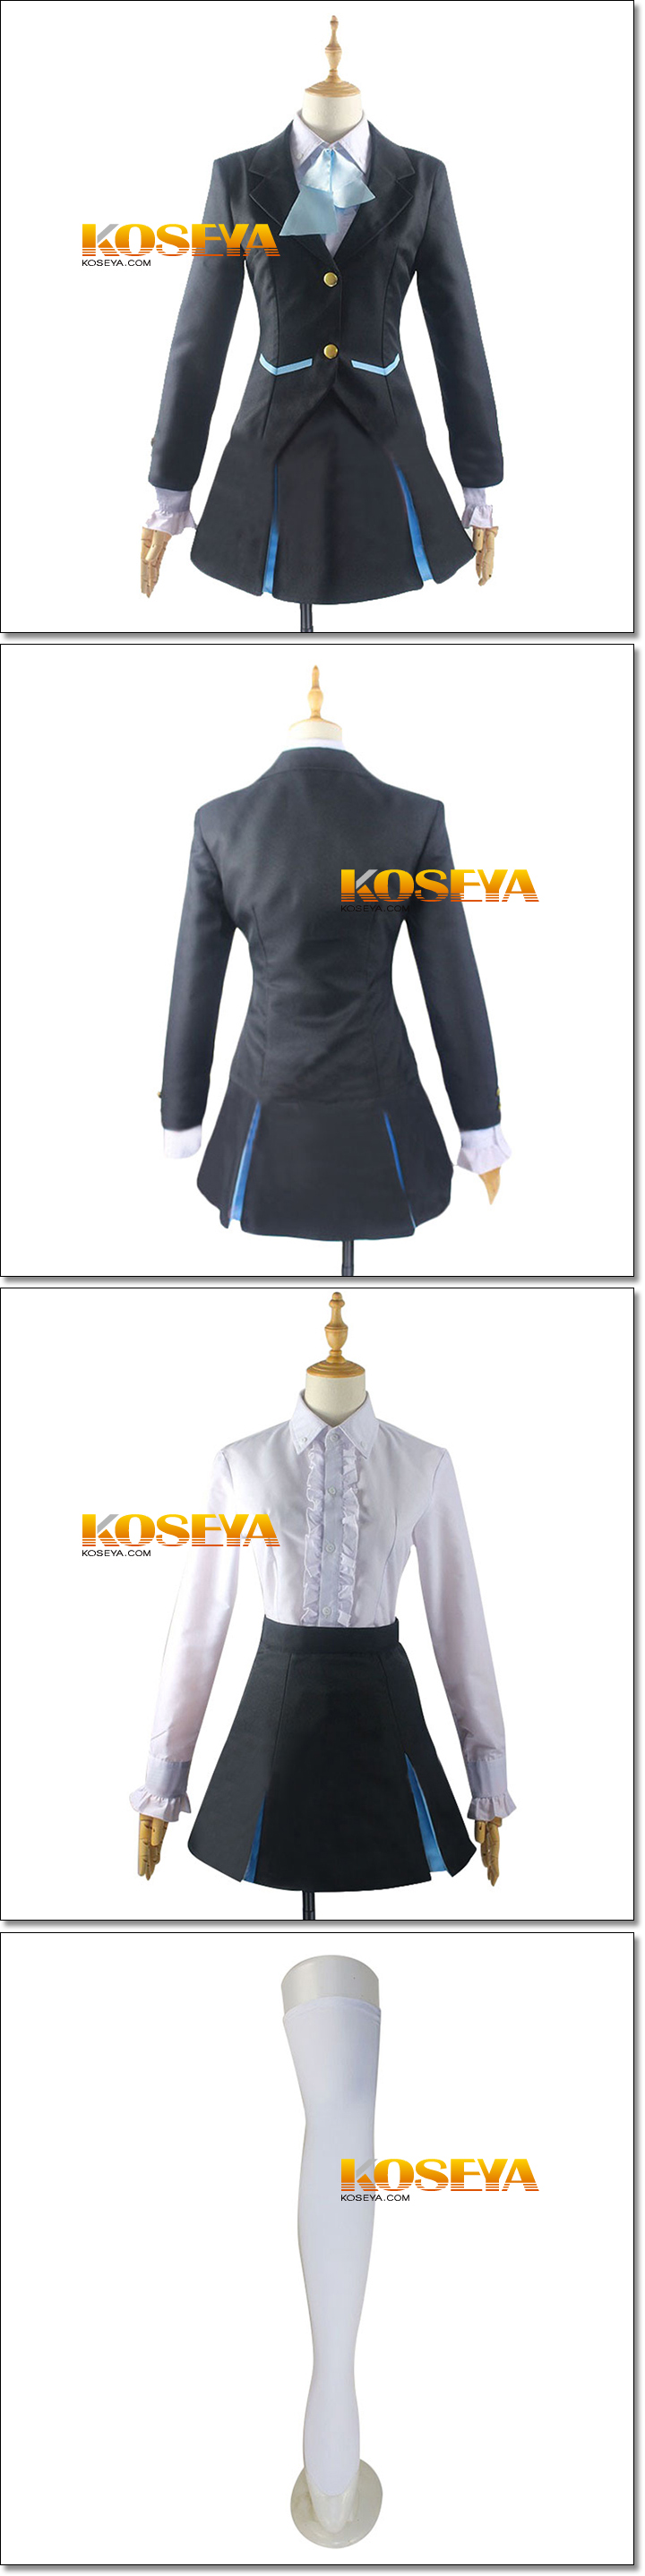 キズナイーバー 園崎法子（そのざき・のりこ） 風 コスプレ衣装:KOSEYA 